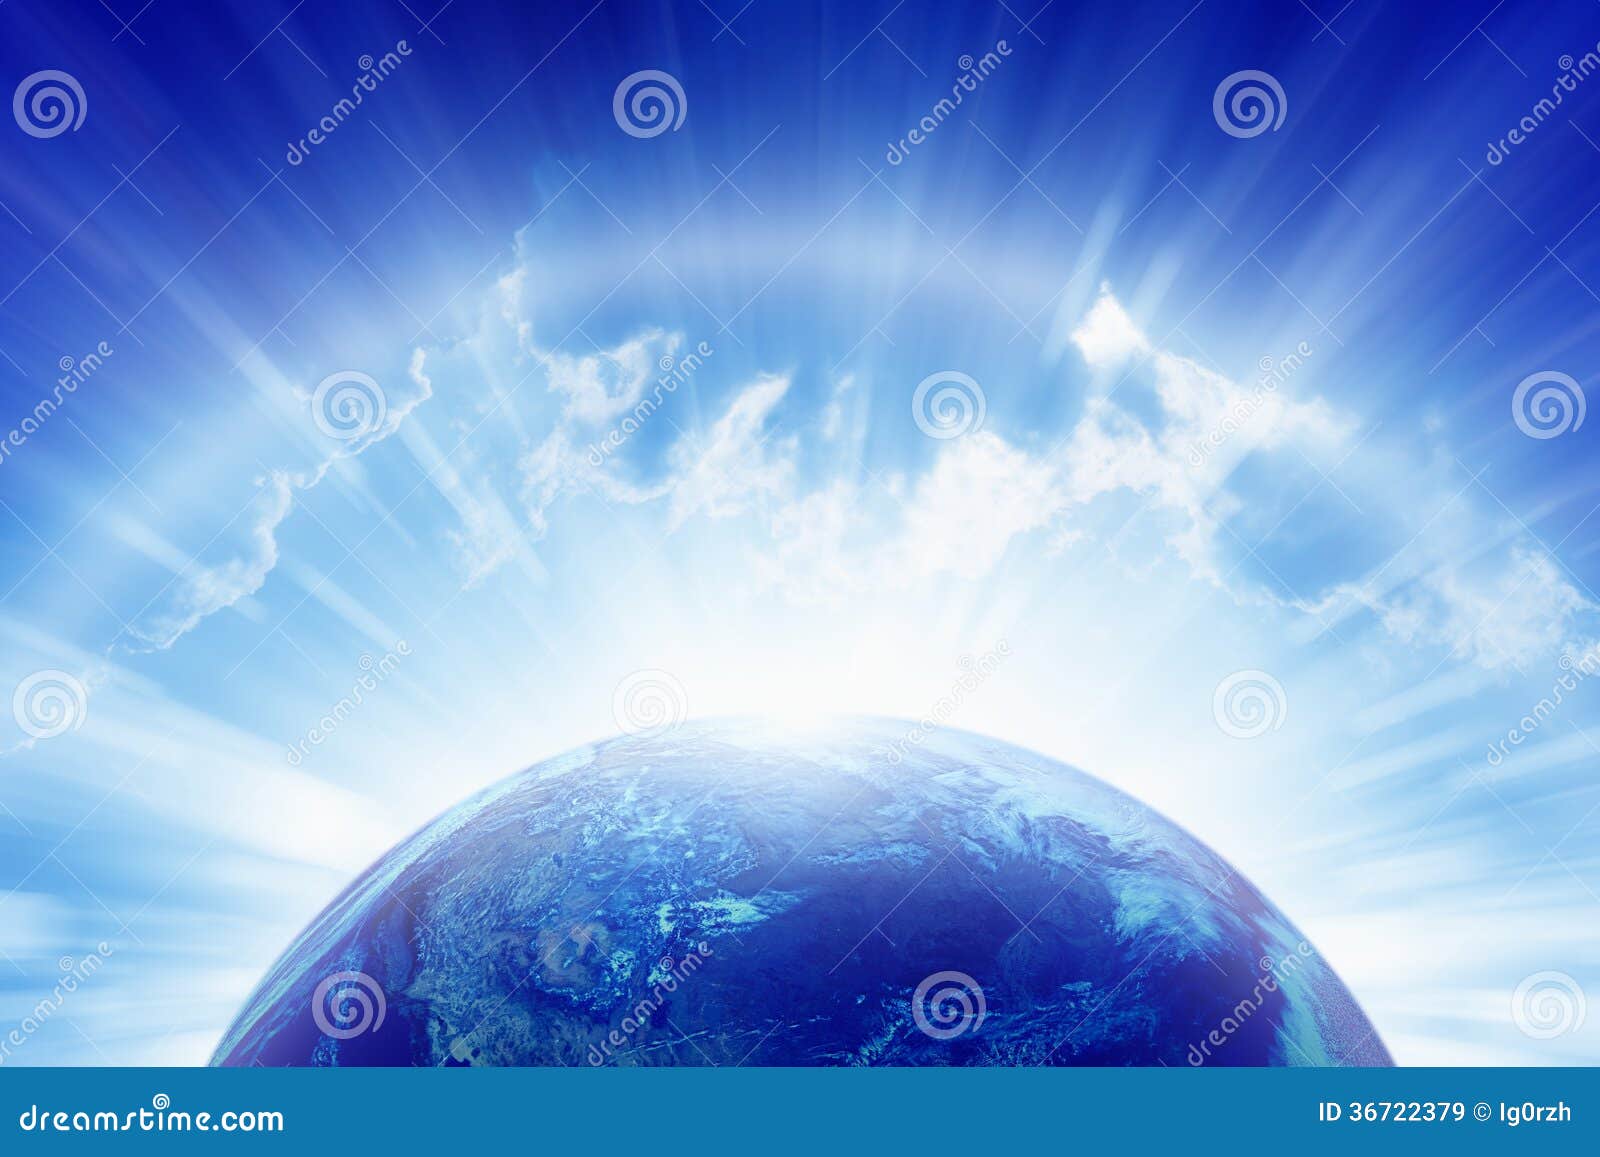 planet earth, bright sun, heaven